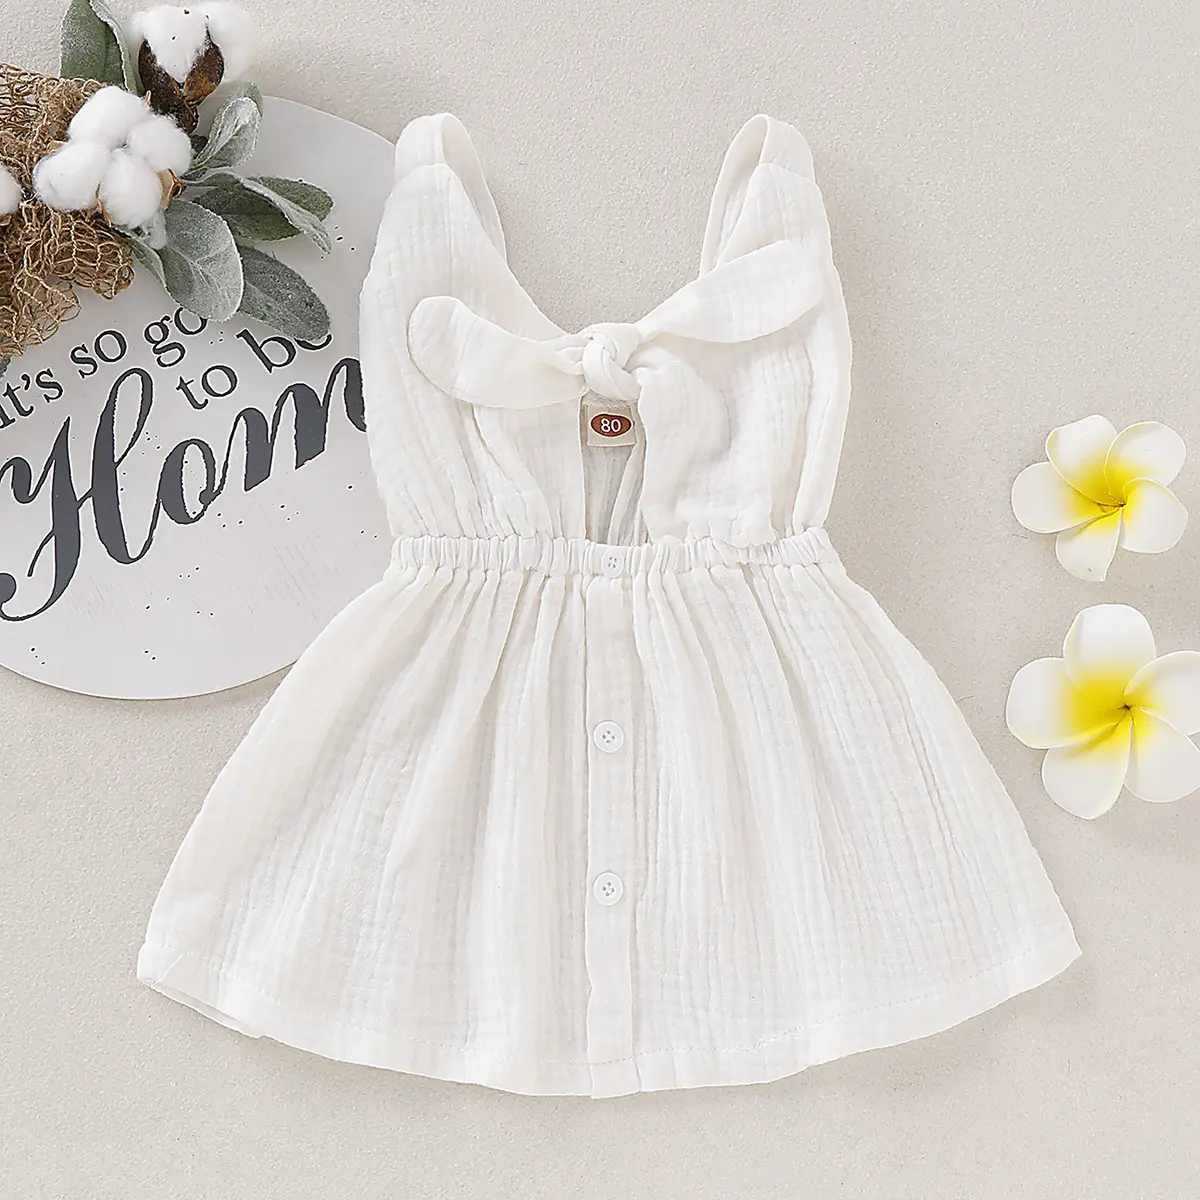 לבן קמטים בד תינוק בגדי ילדה חצאית תינוקת לא שרוול שמלת רגיל צבע לפרוע תינוק כותנה שמלה